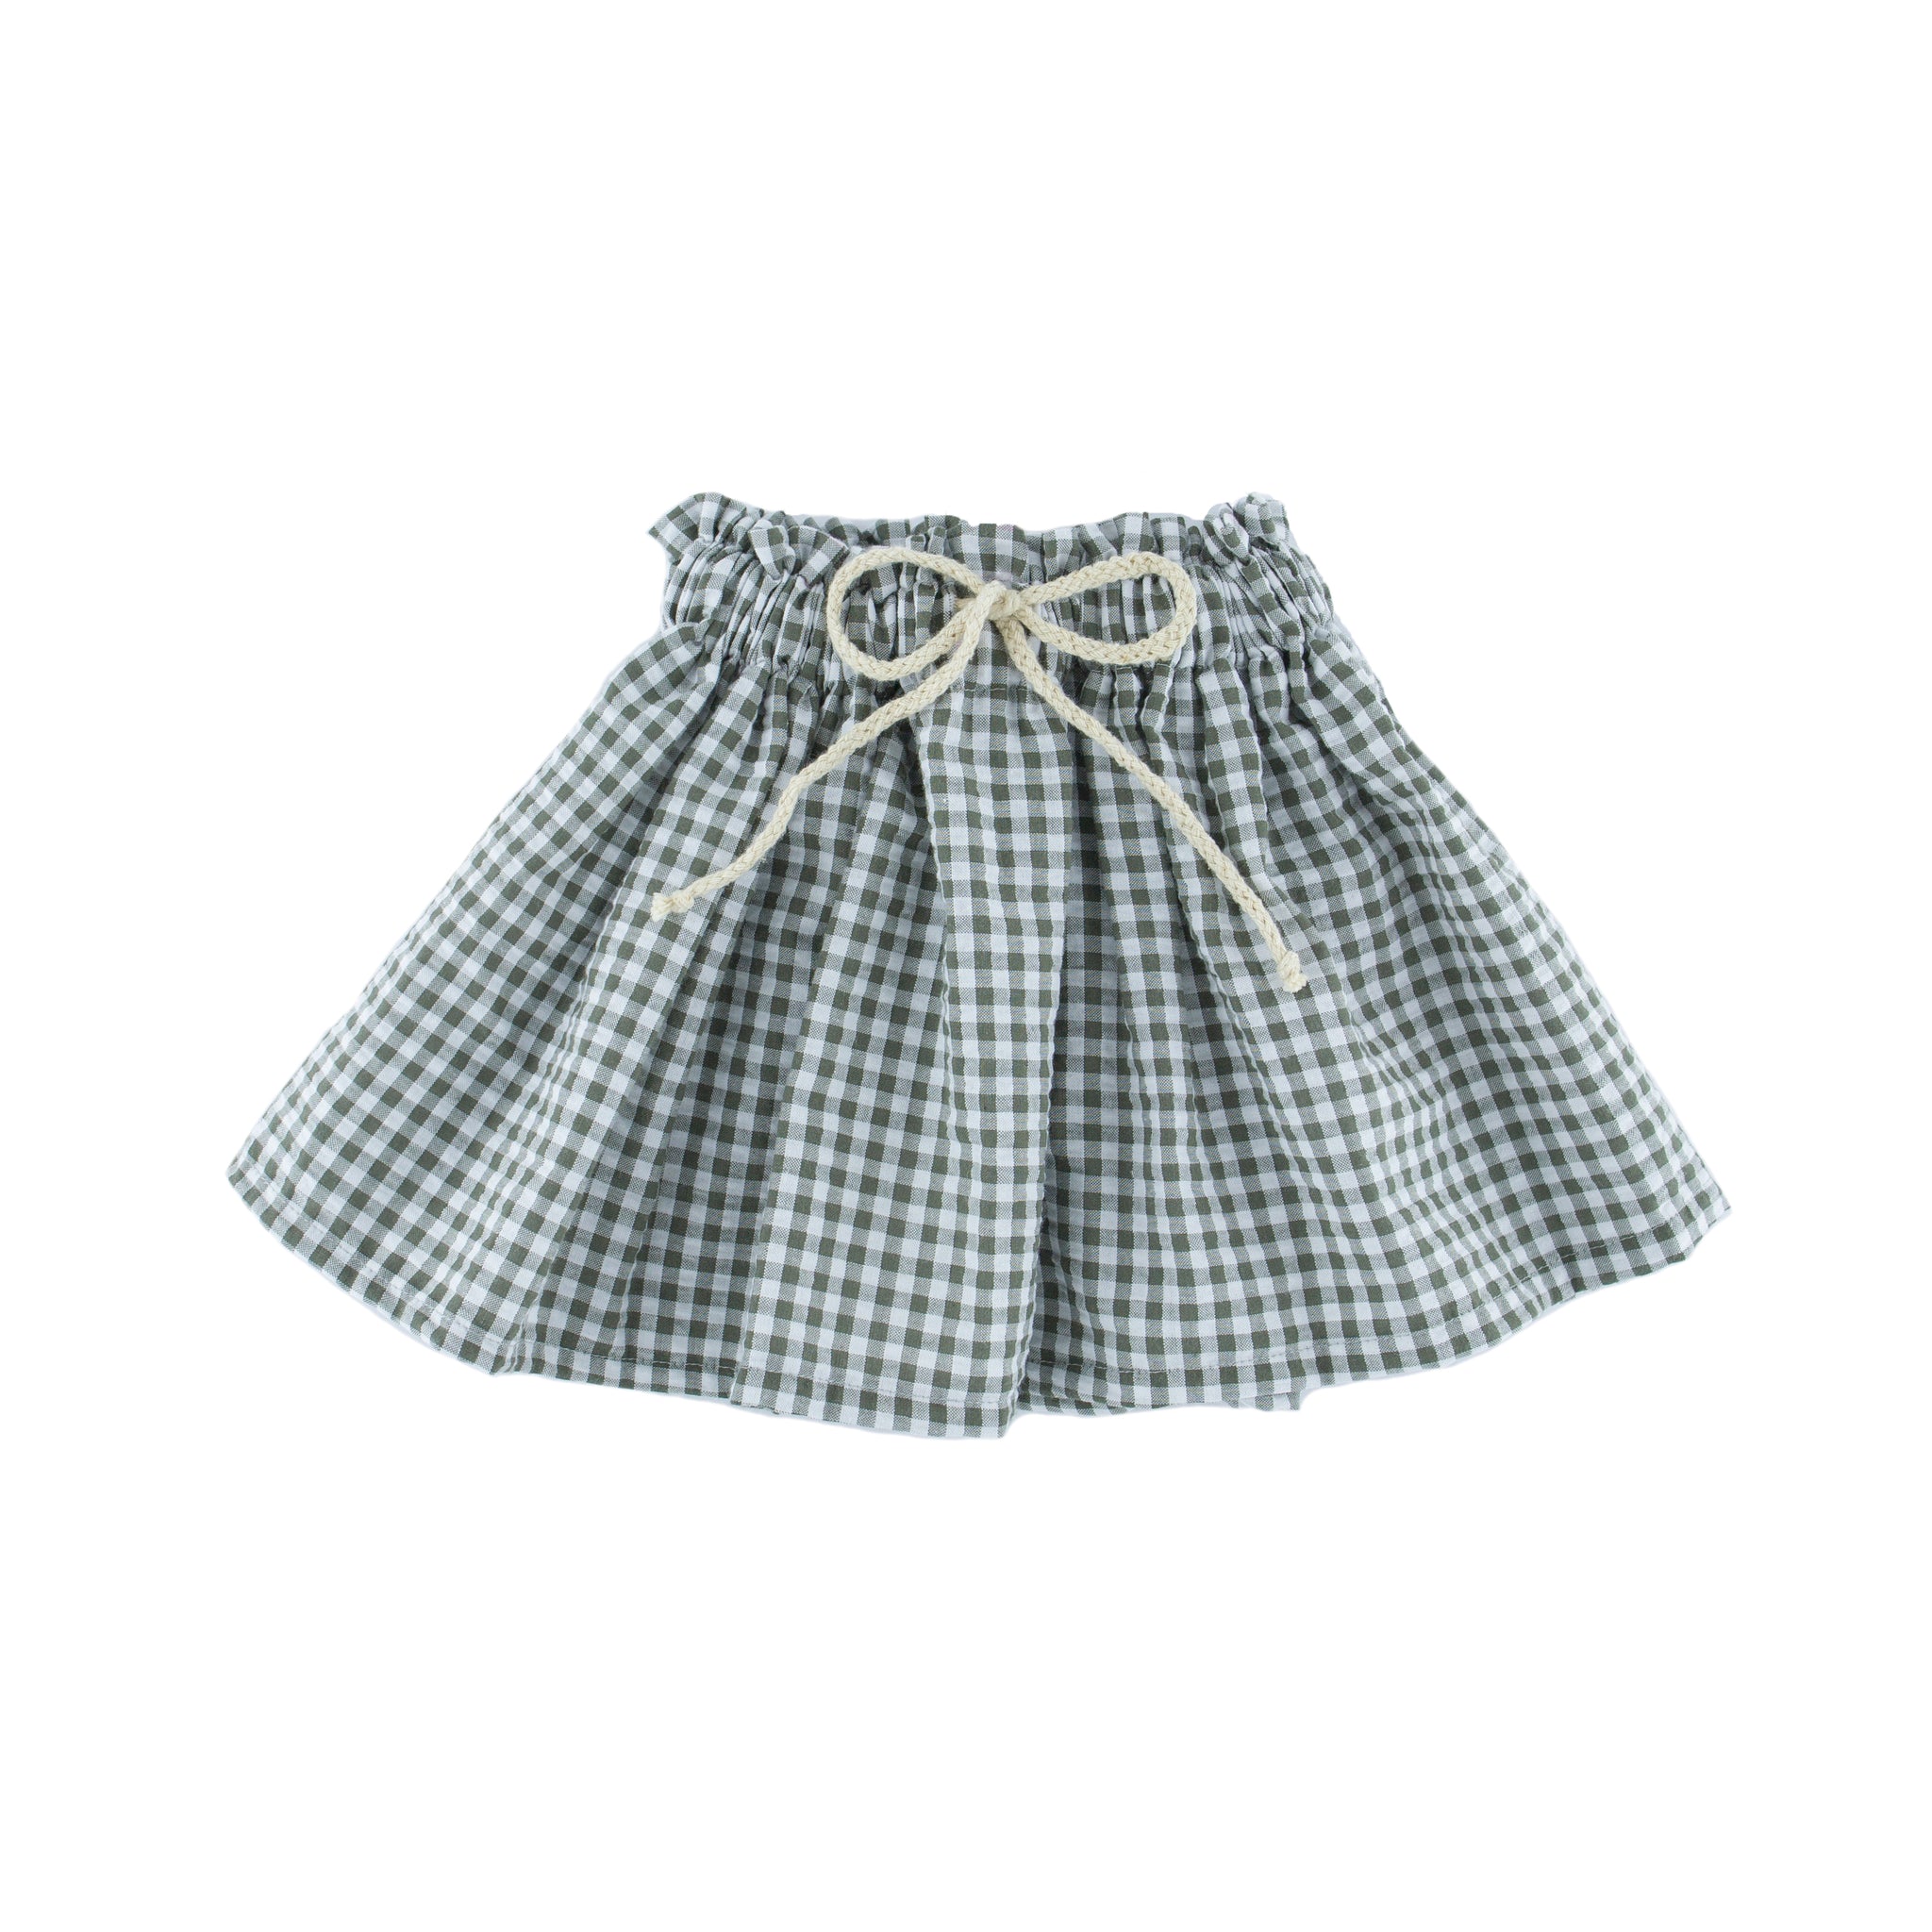 Sienna skirt - checkered Khaki